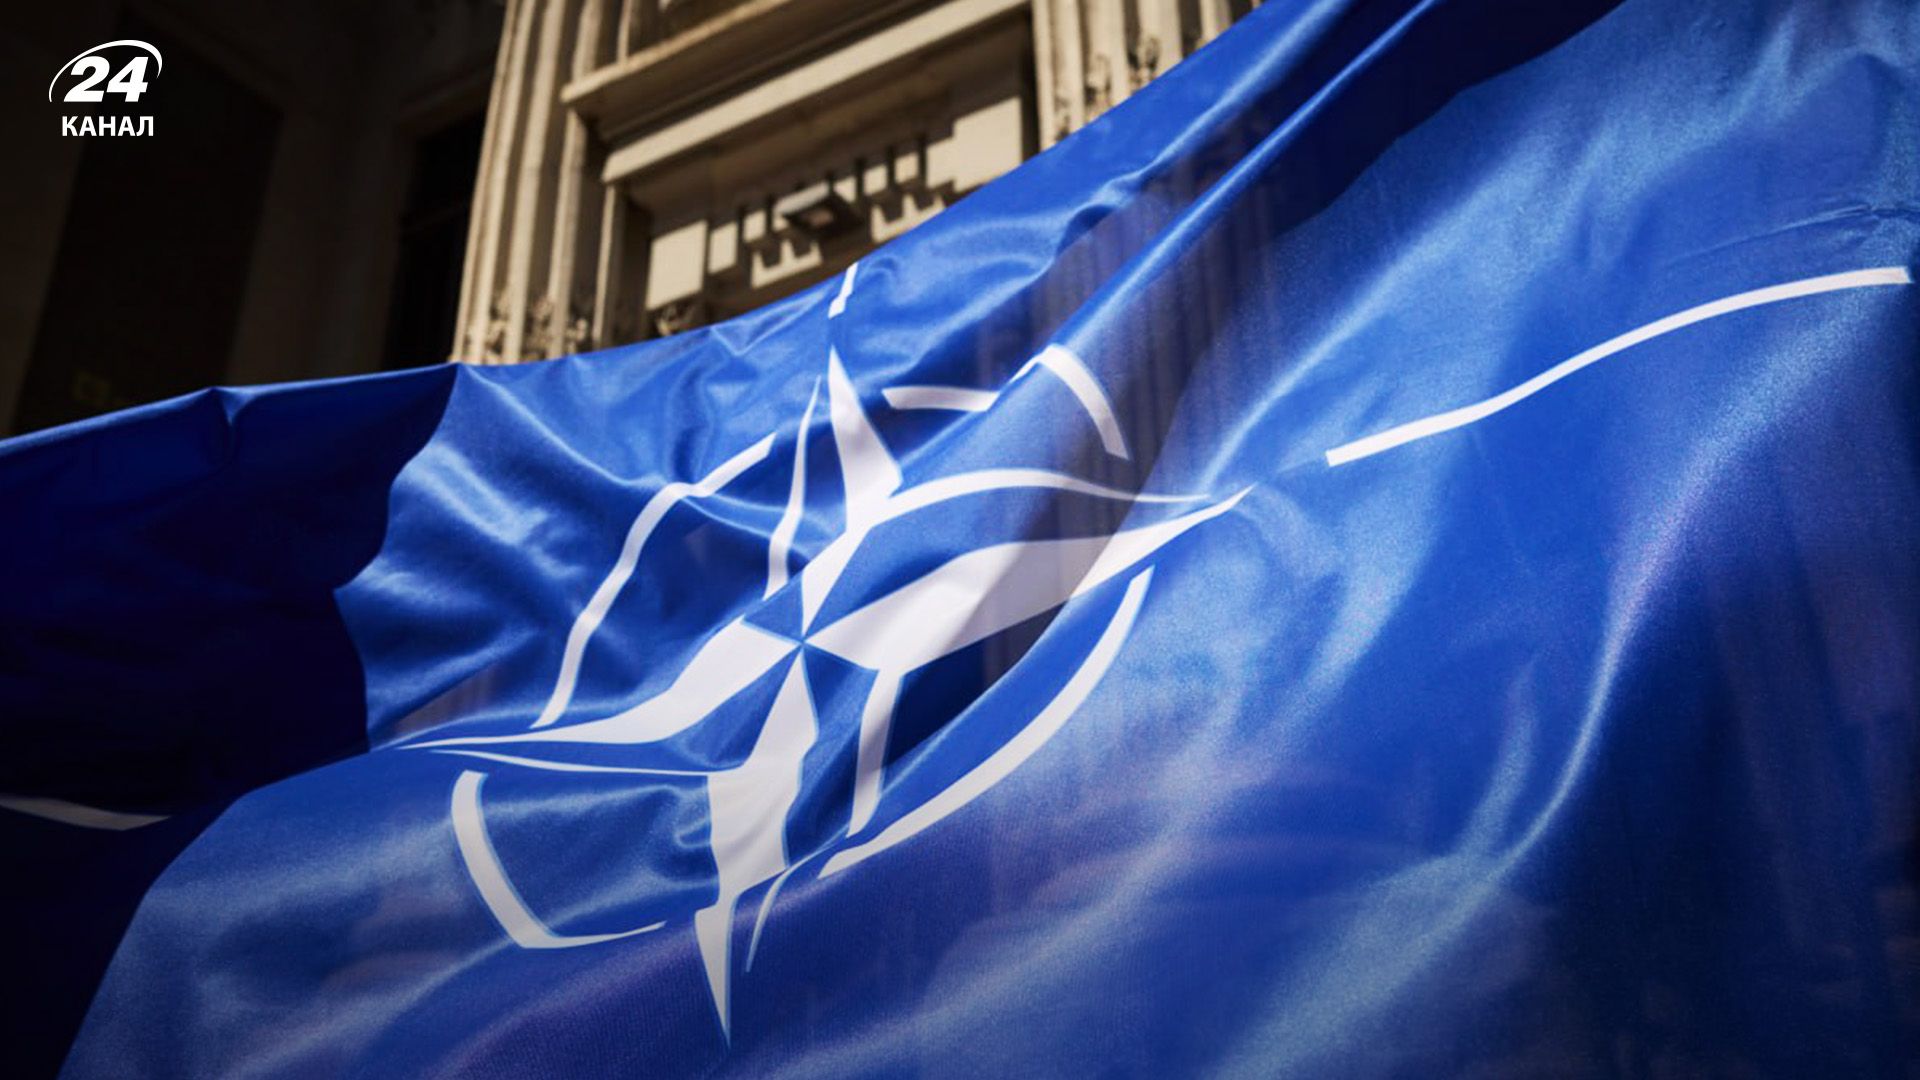 Одна из стран НАТО может попросить защиты по 5 статье